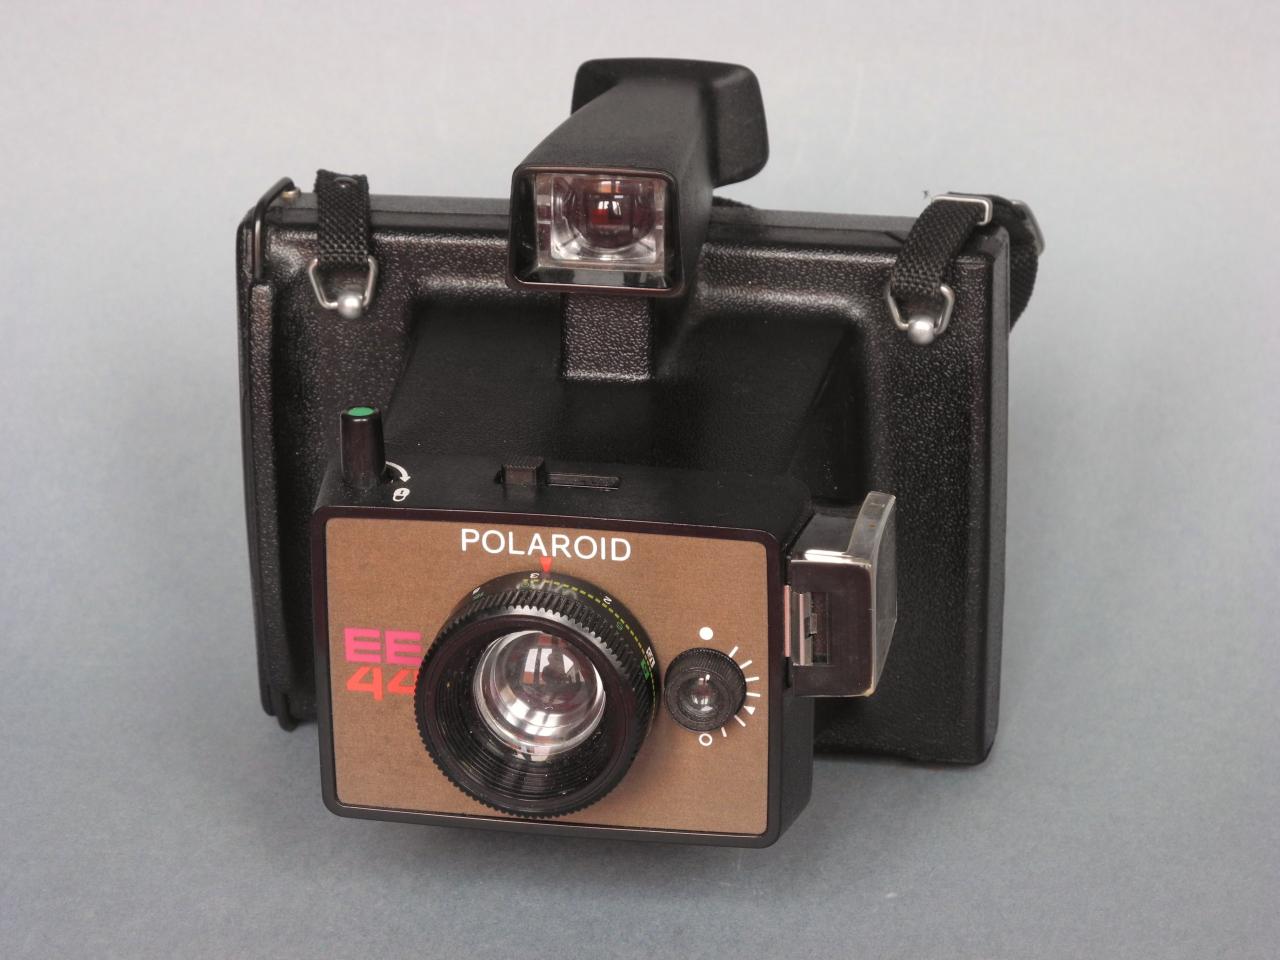 *Polaroid EE 44 1976 U.S.A*